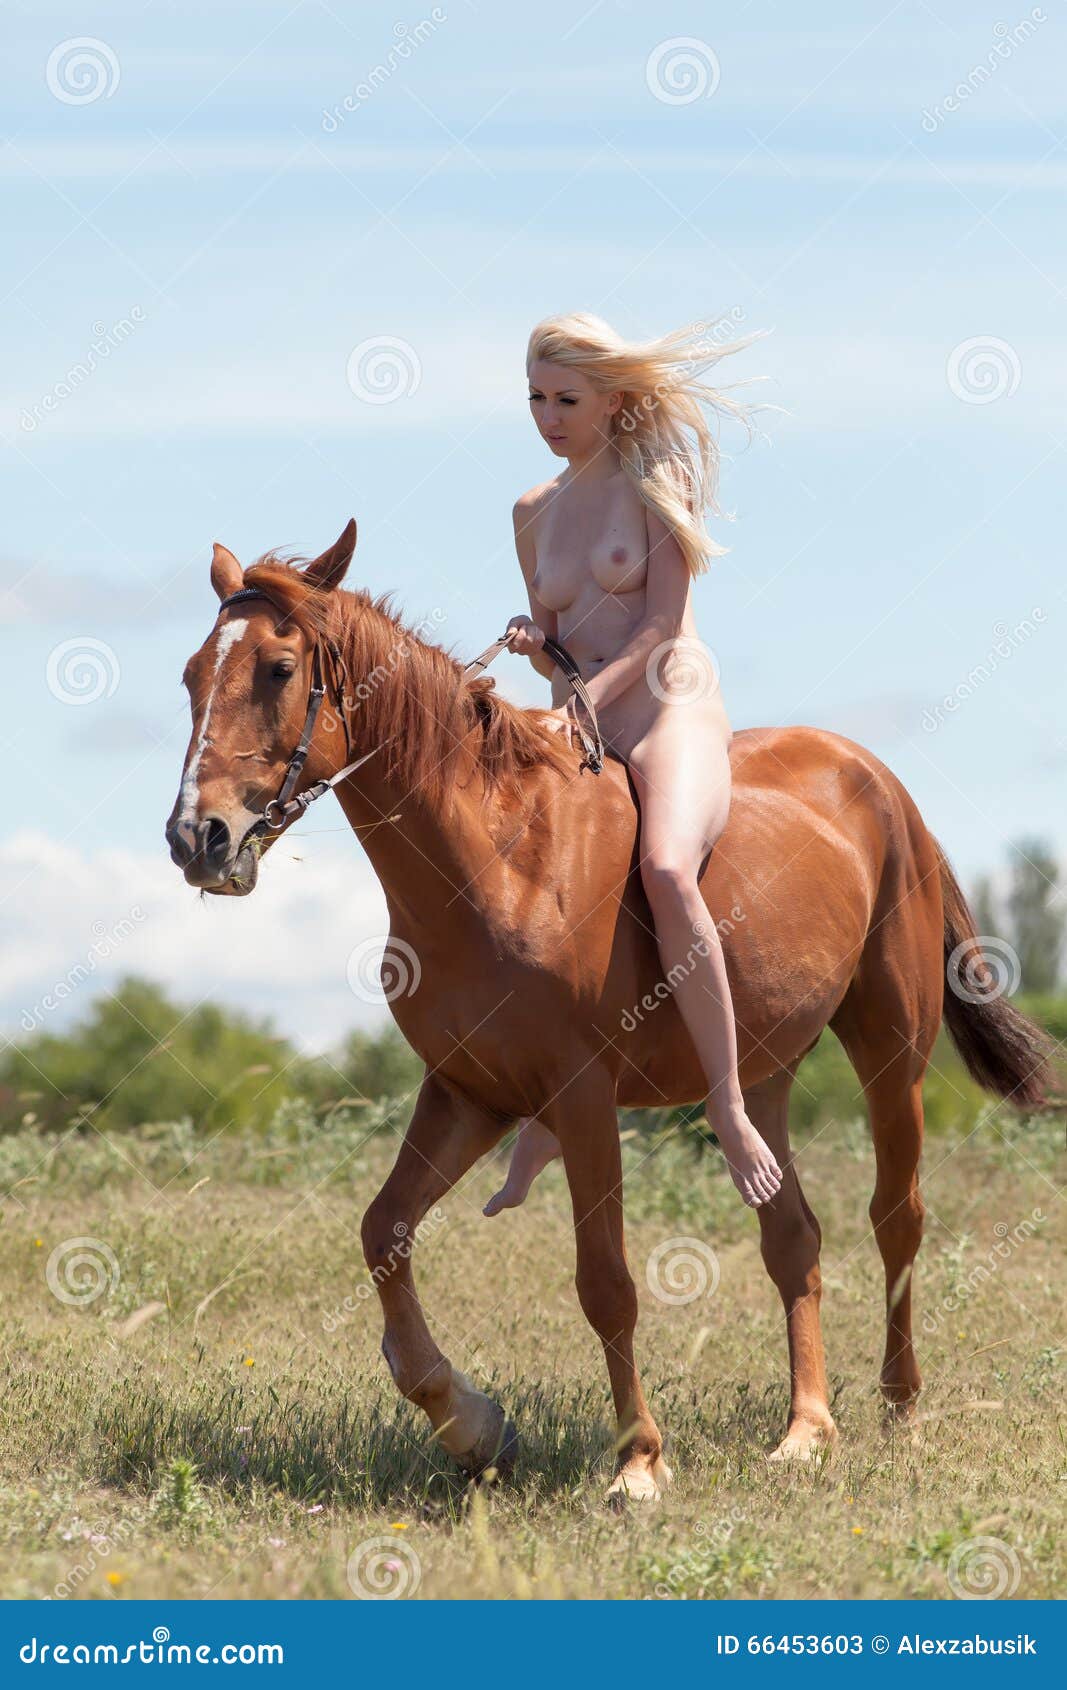 Nackt reiten pferd